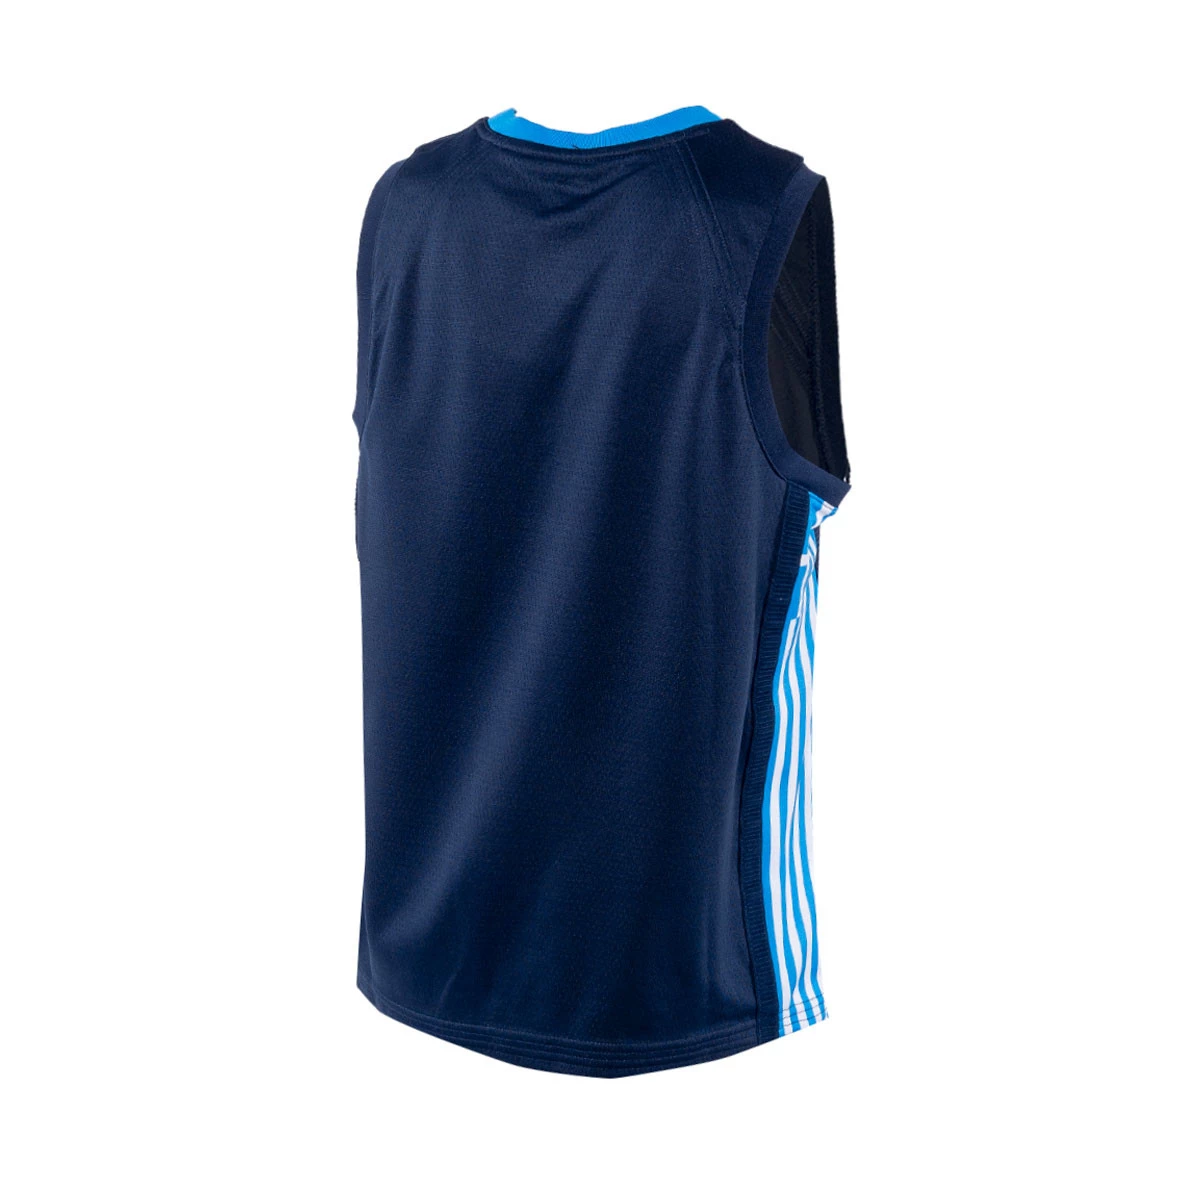 Grecia (asfalto) Camiseta de baloncesto Nike - Niño/a